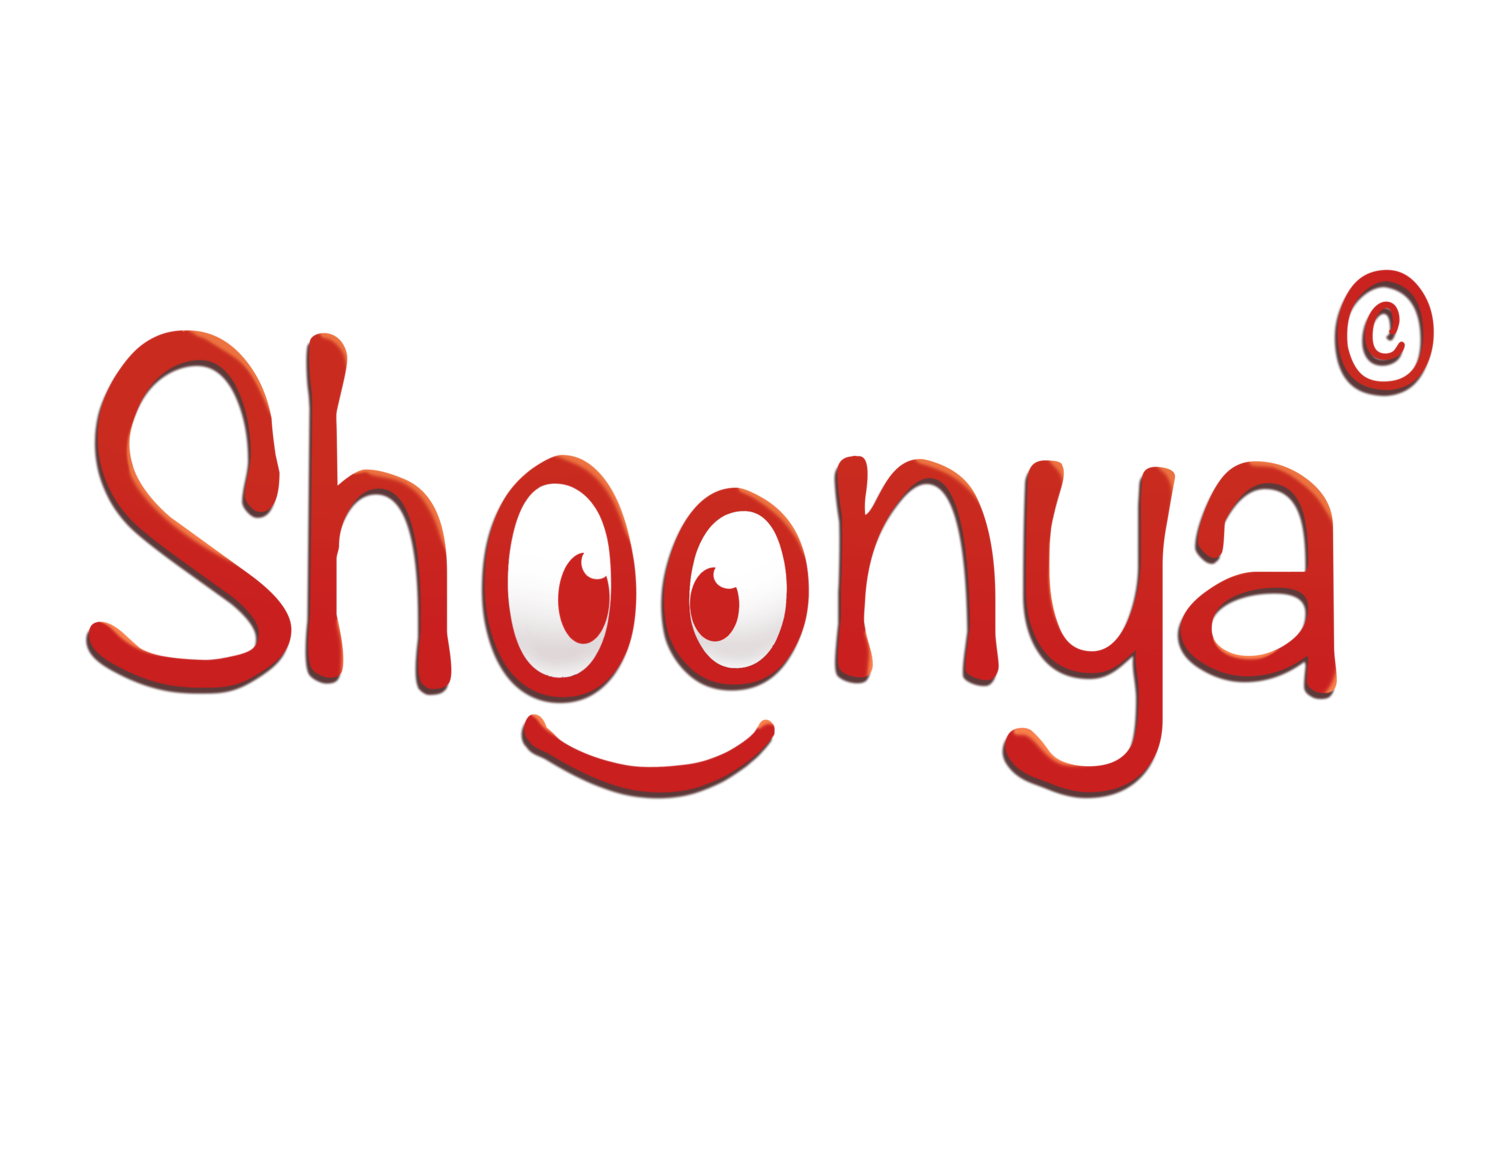 Telugu Language Learning App by Shoonya Digital